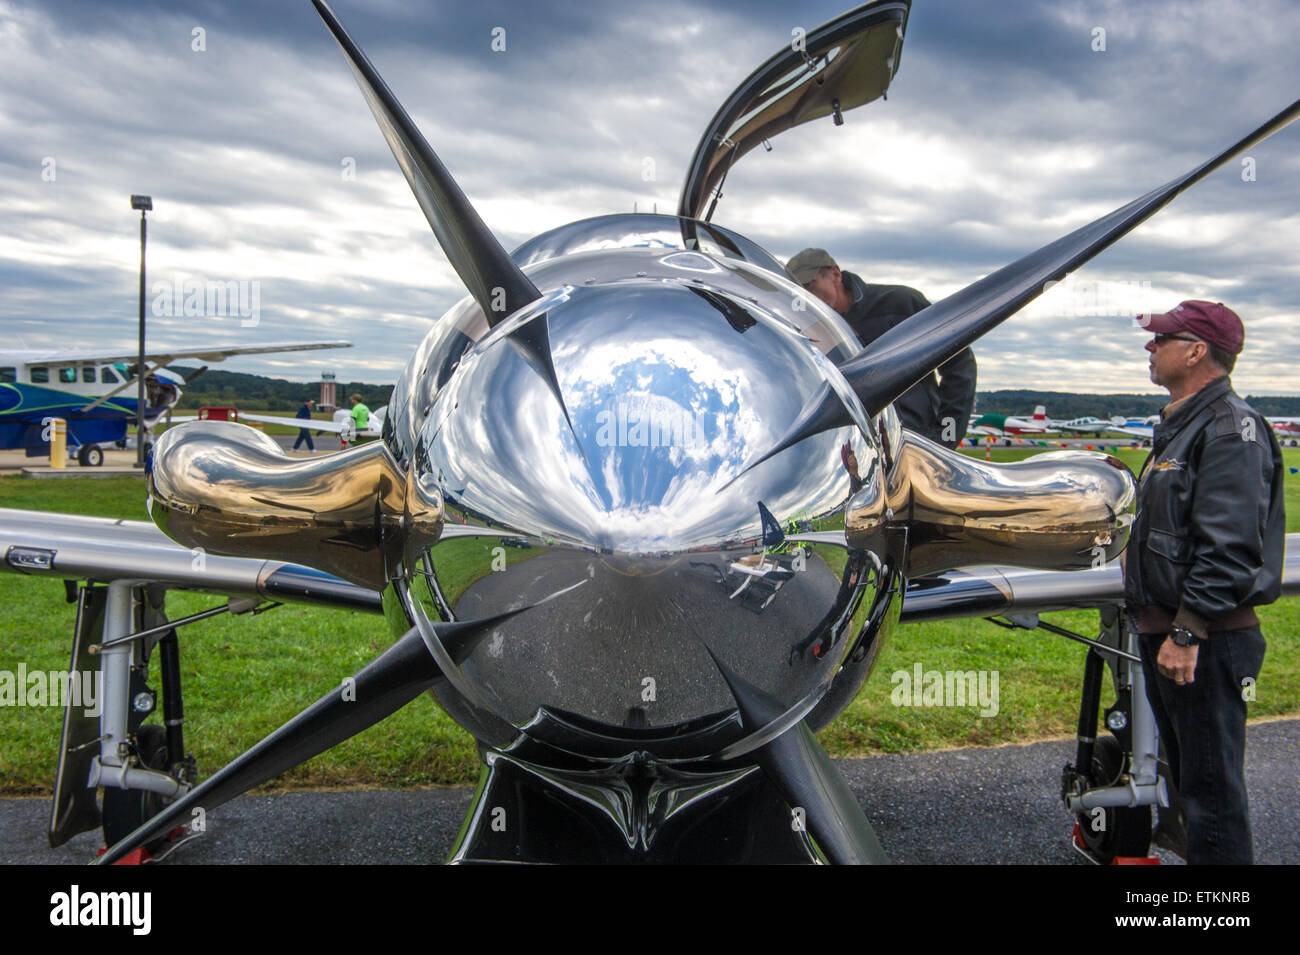 Nahaufnahme der glänzende Nase des Flugzeugs mit zwei Männern beobachten in Creswell, Maryland, USA Stockfoto